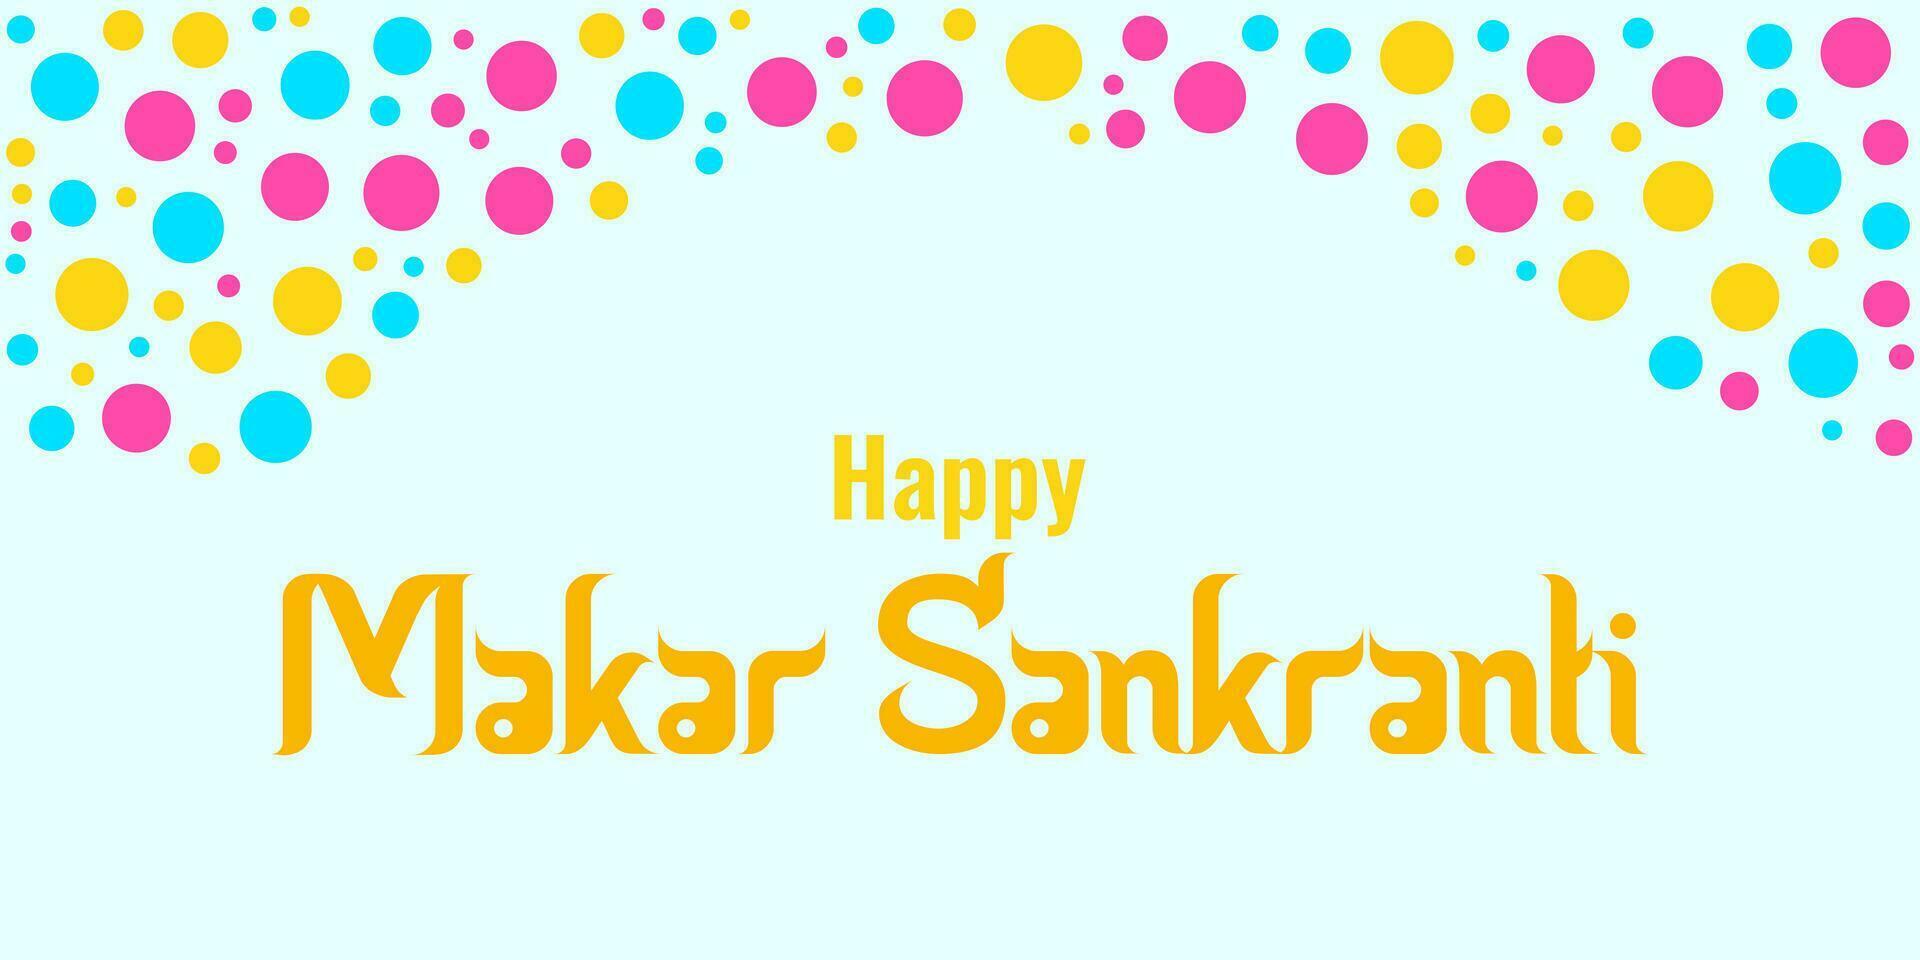 makara Sankranti uma ensolarado feriado do Índia. vetor